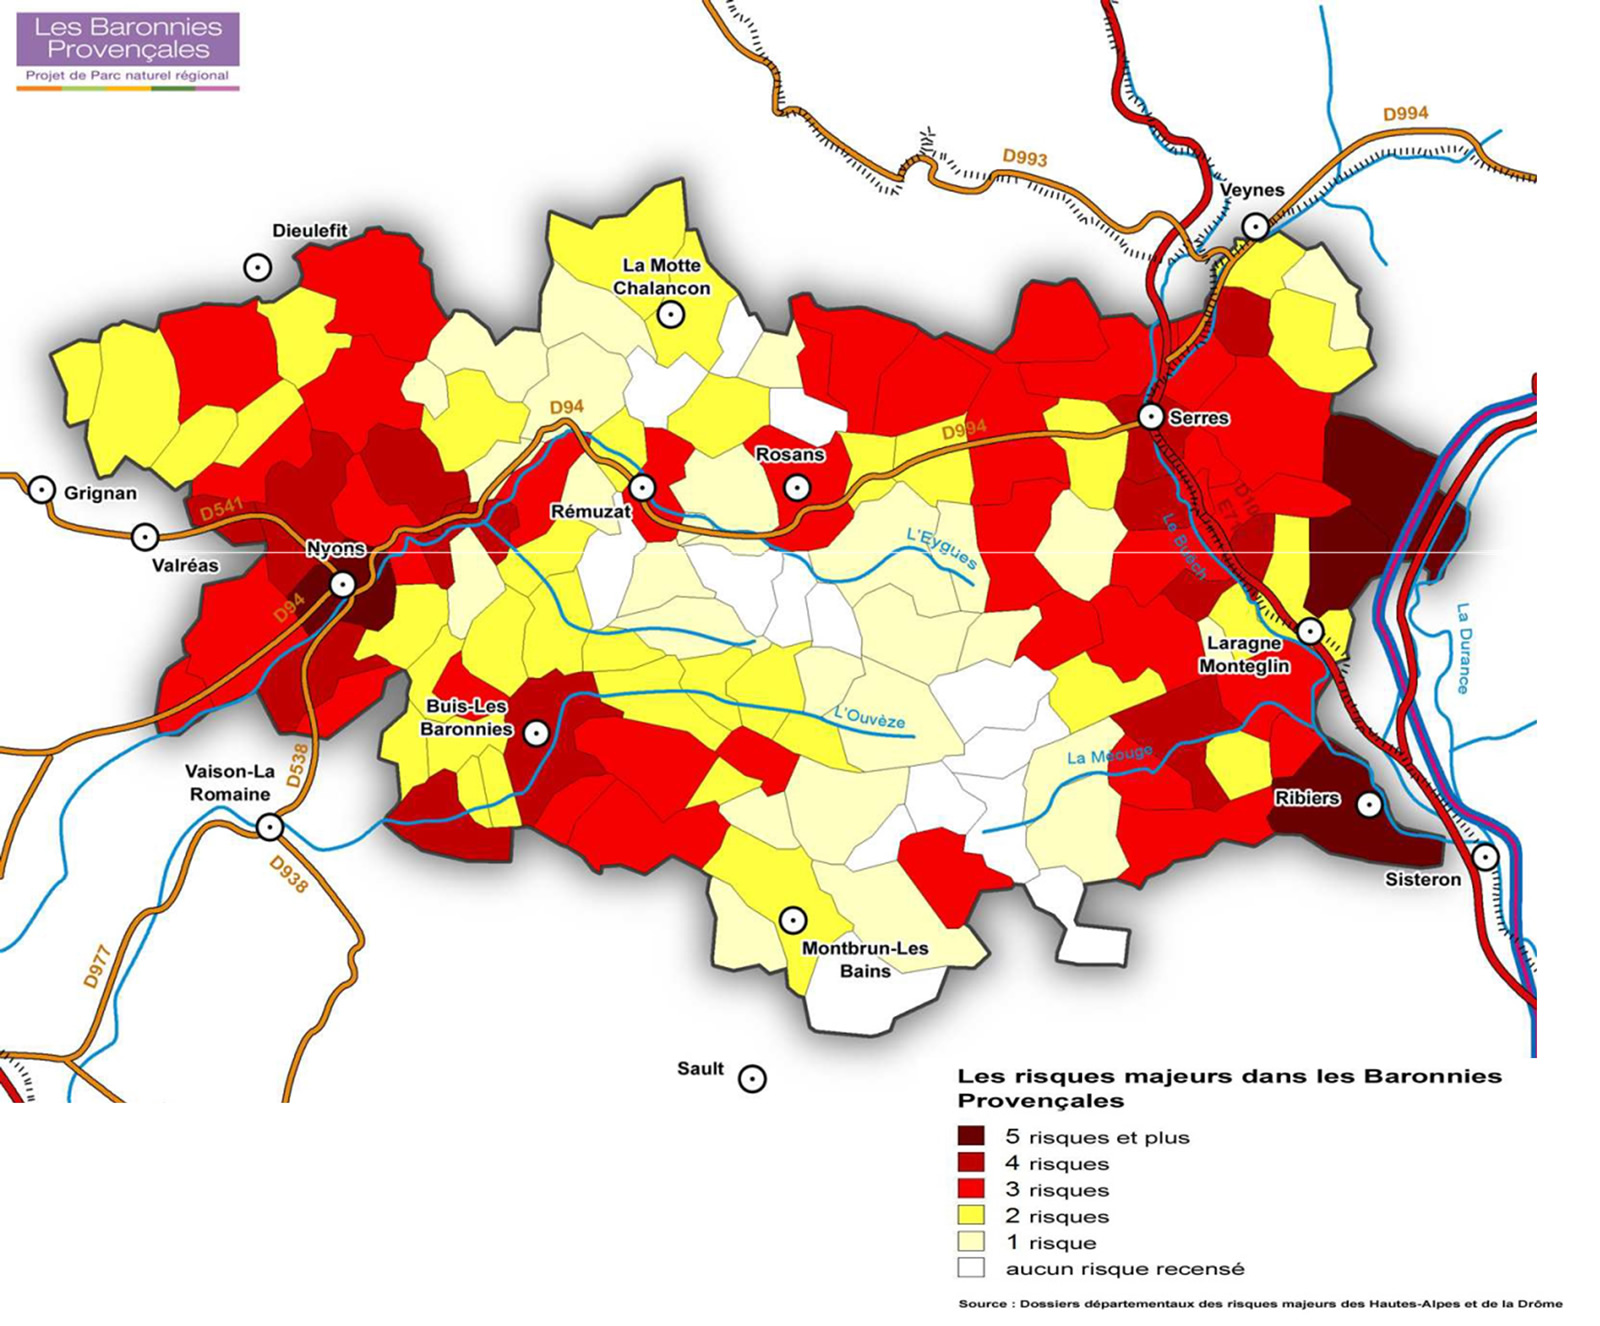 Carte des risques majeurs dans les Baronnies Provençales. Source : SMBP